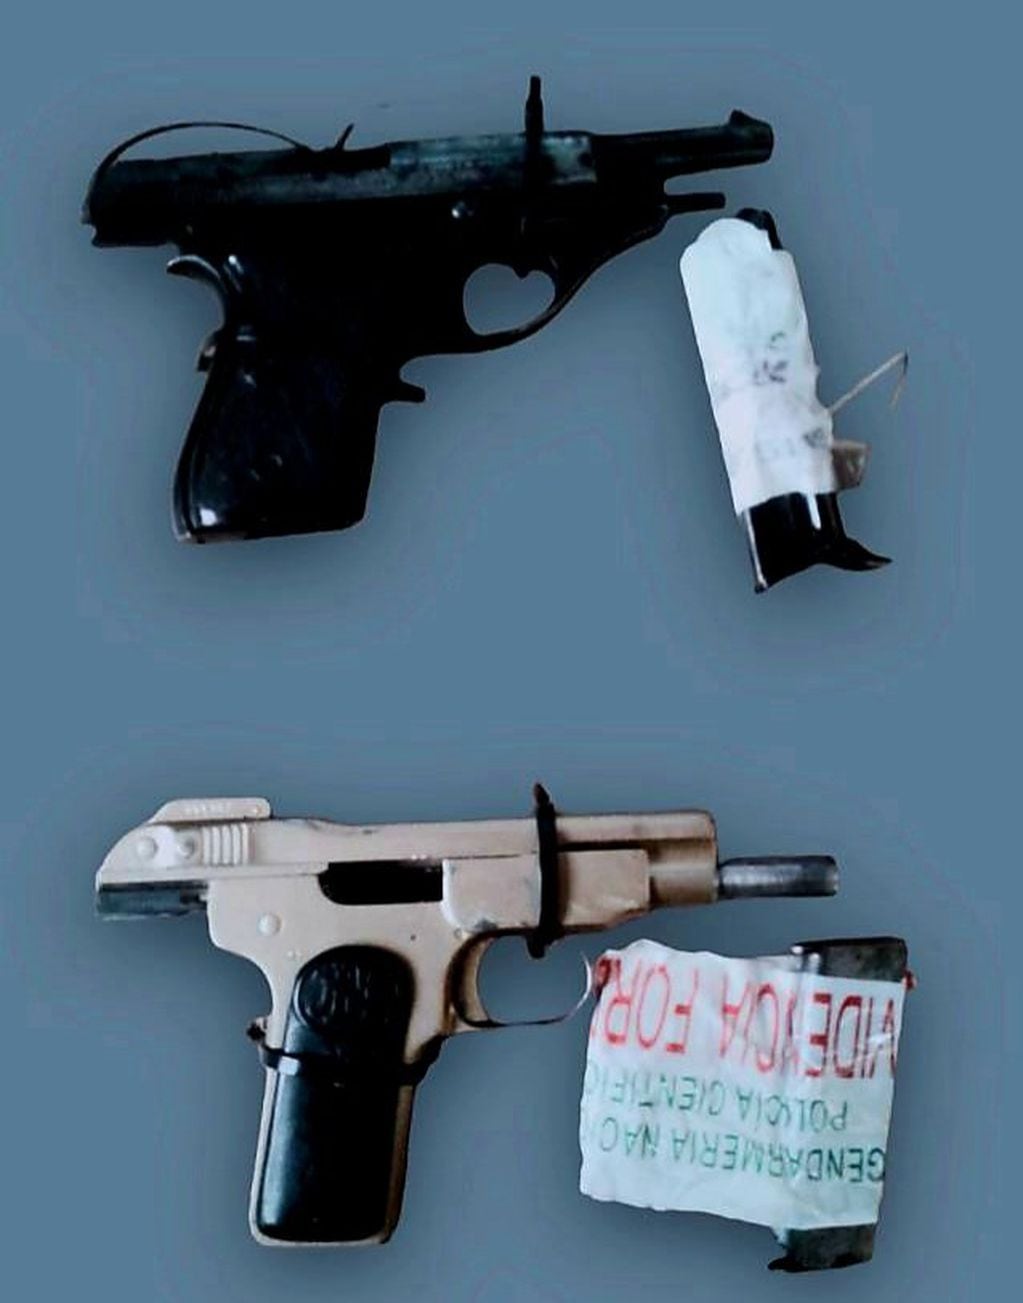 Las armas encontradas por los gendarmes en el control.